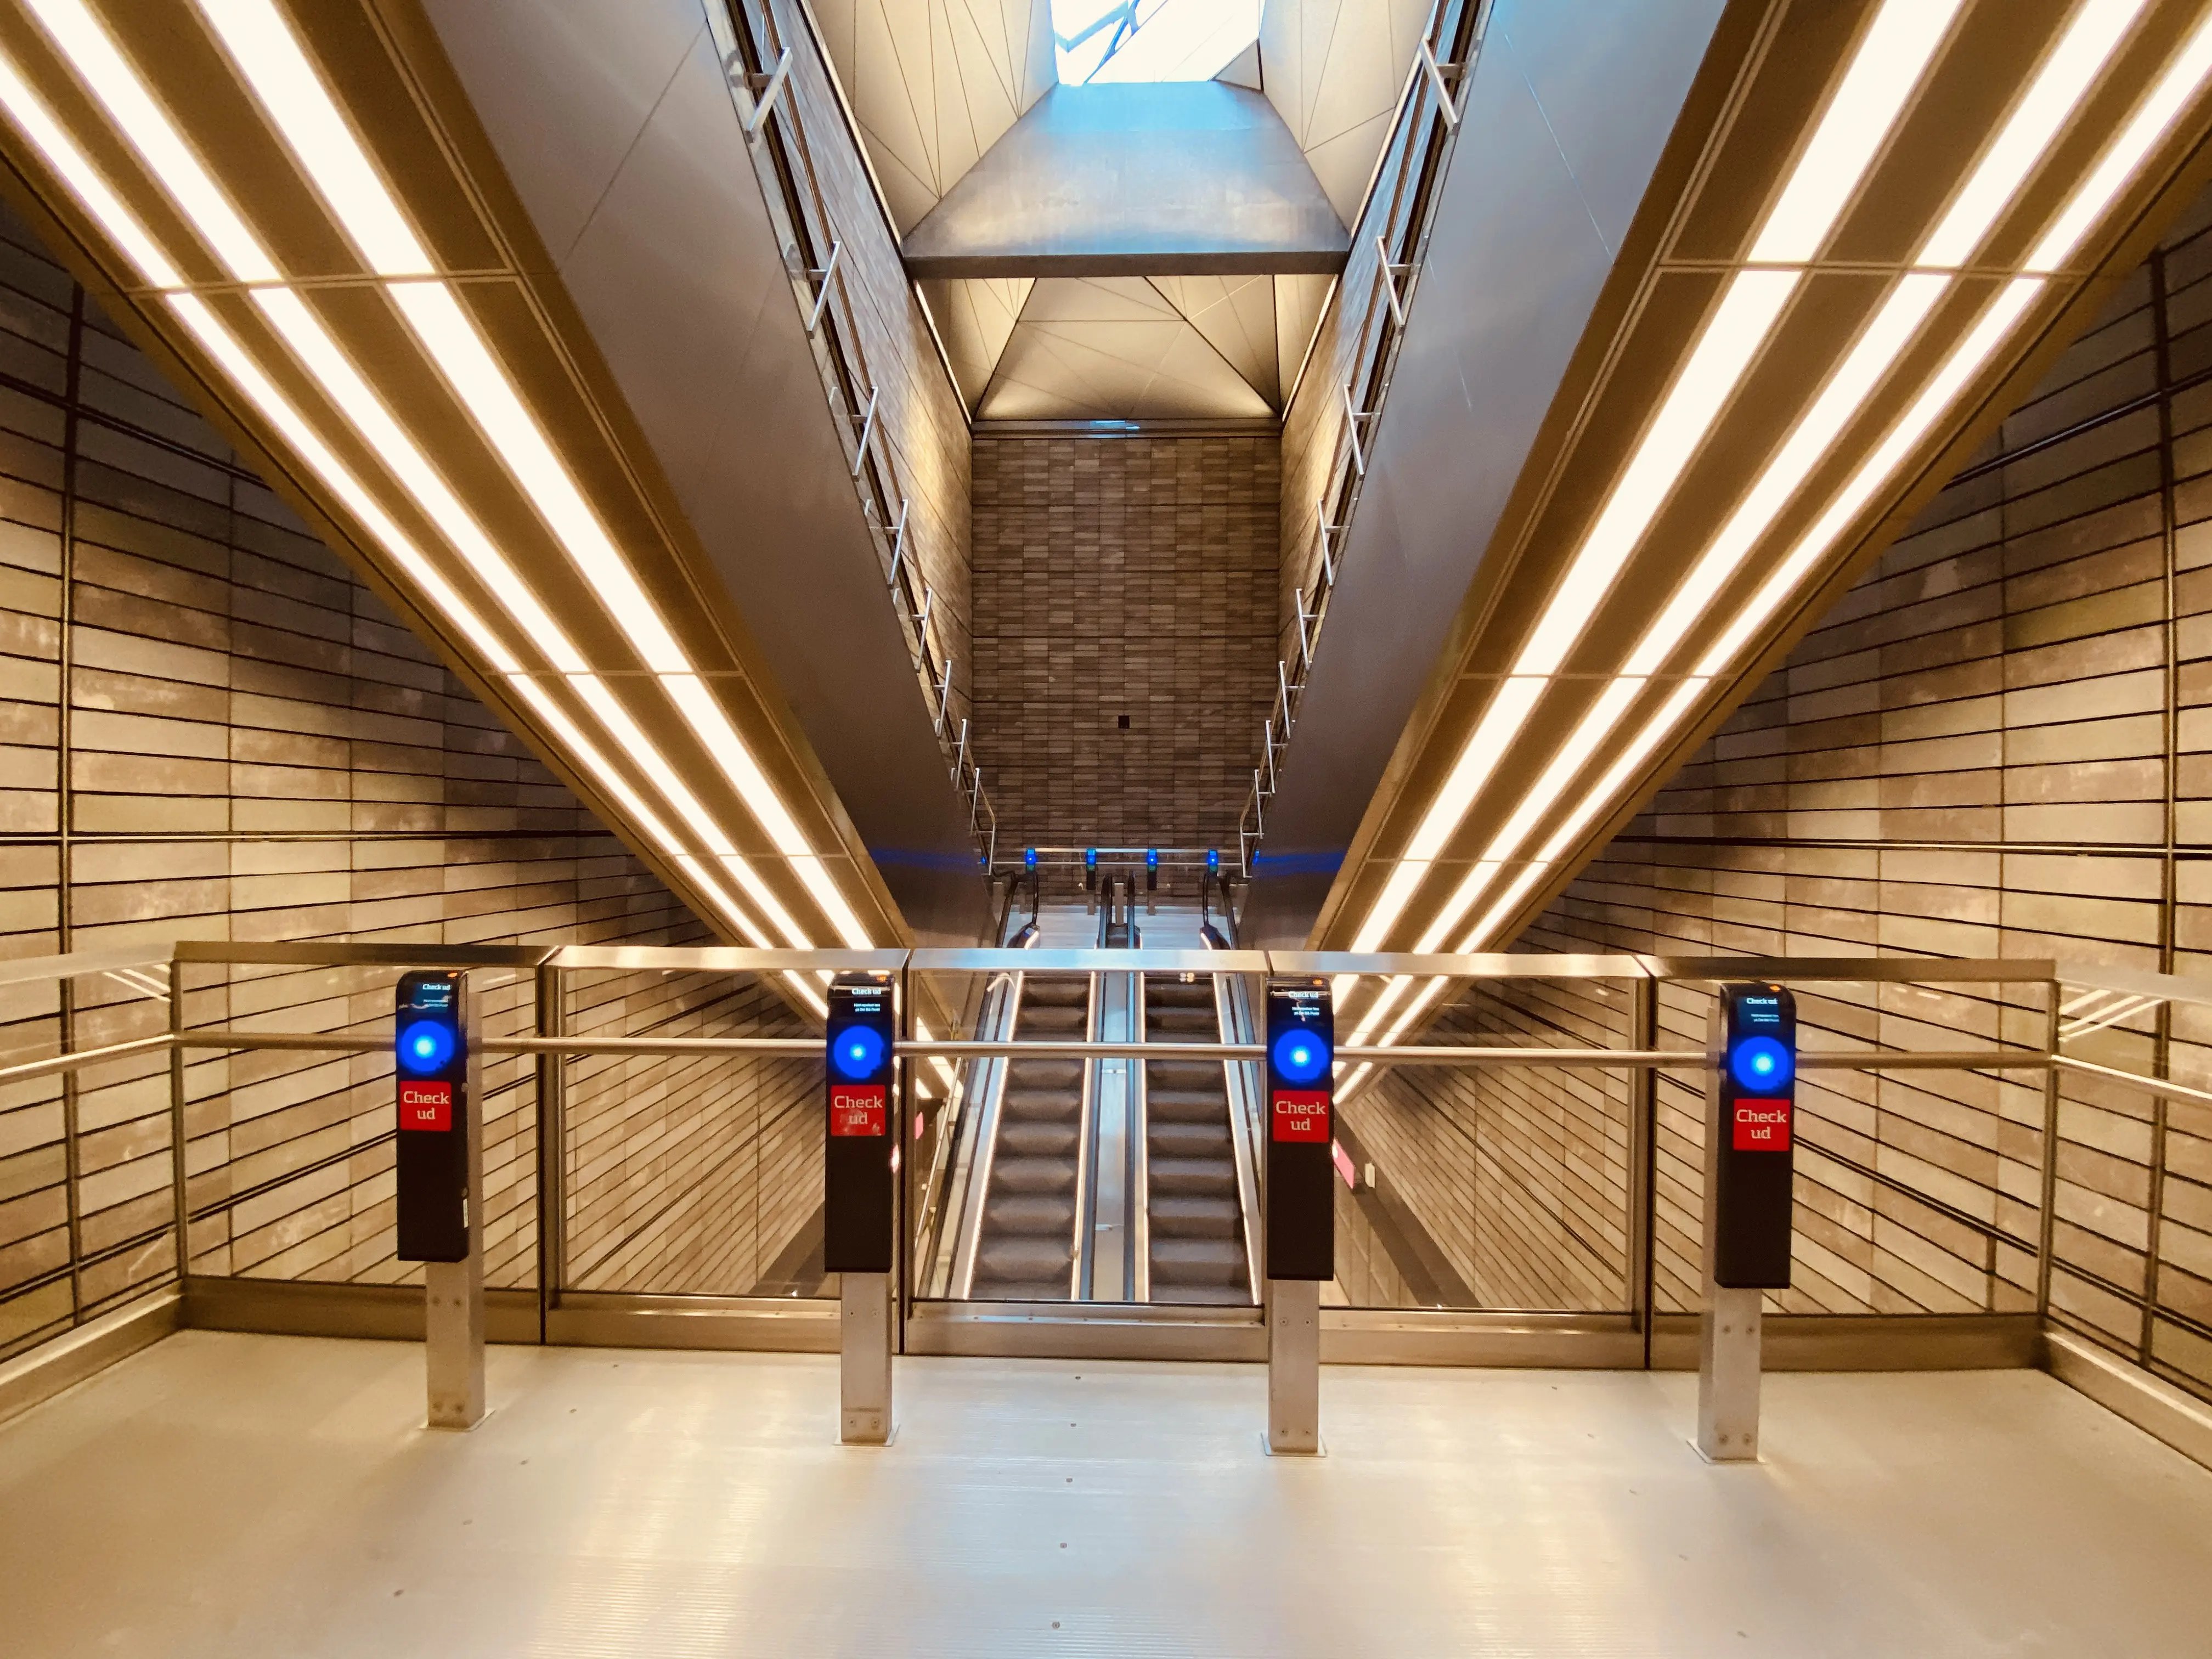 Billede af Nuuks Plads Metrostation.